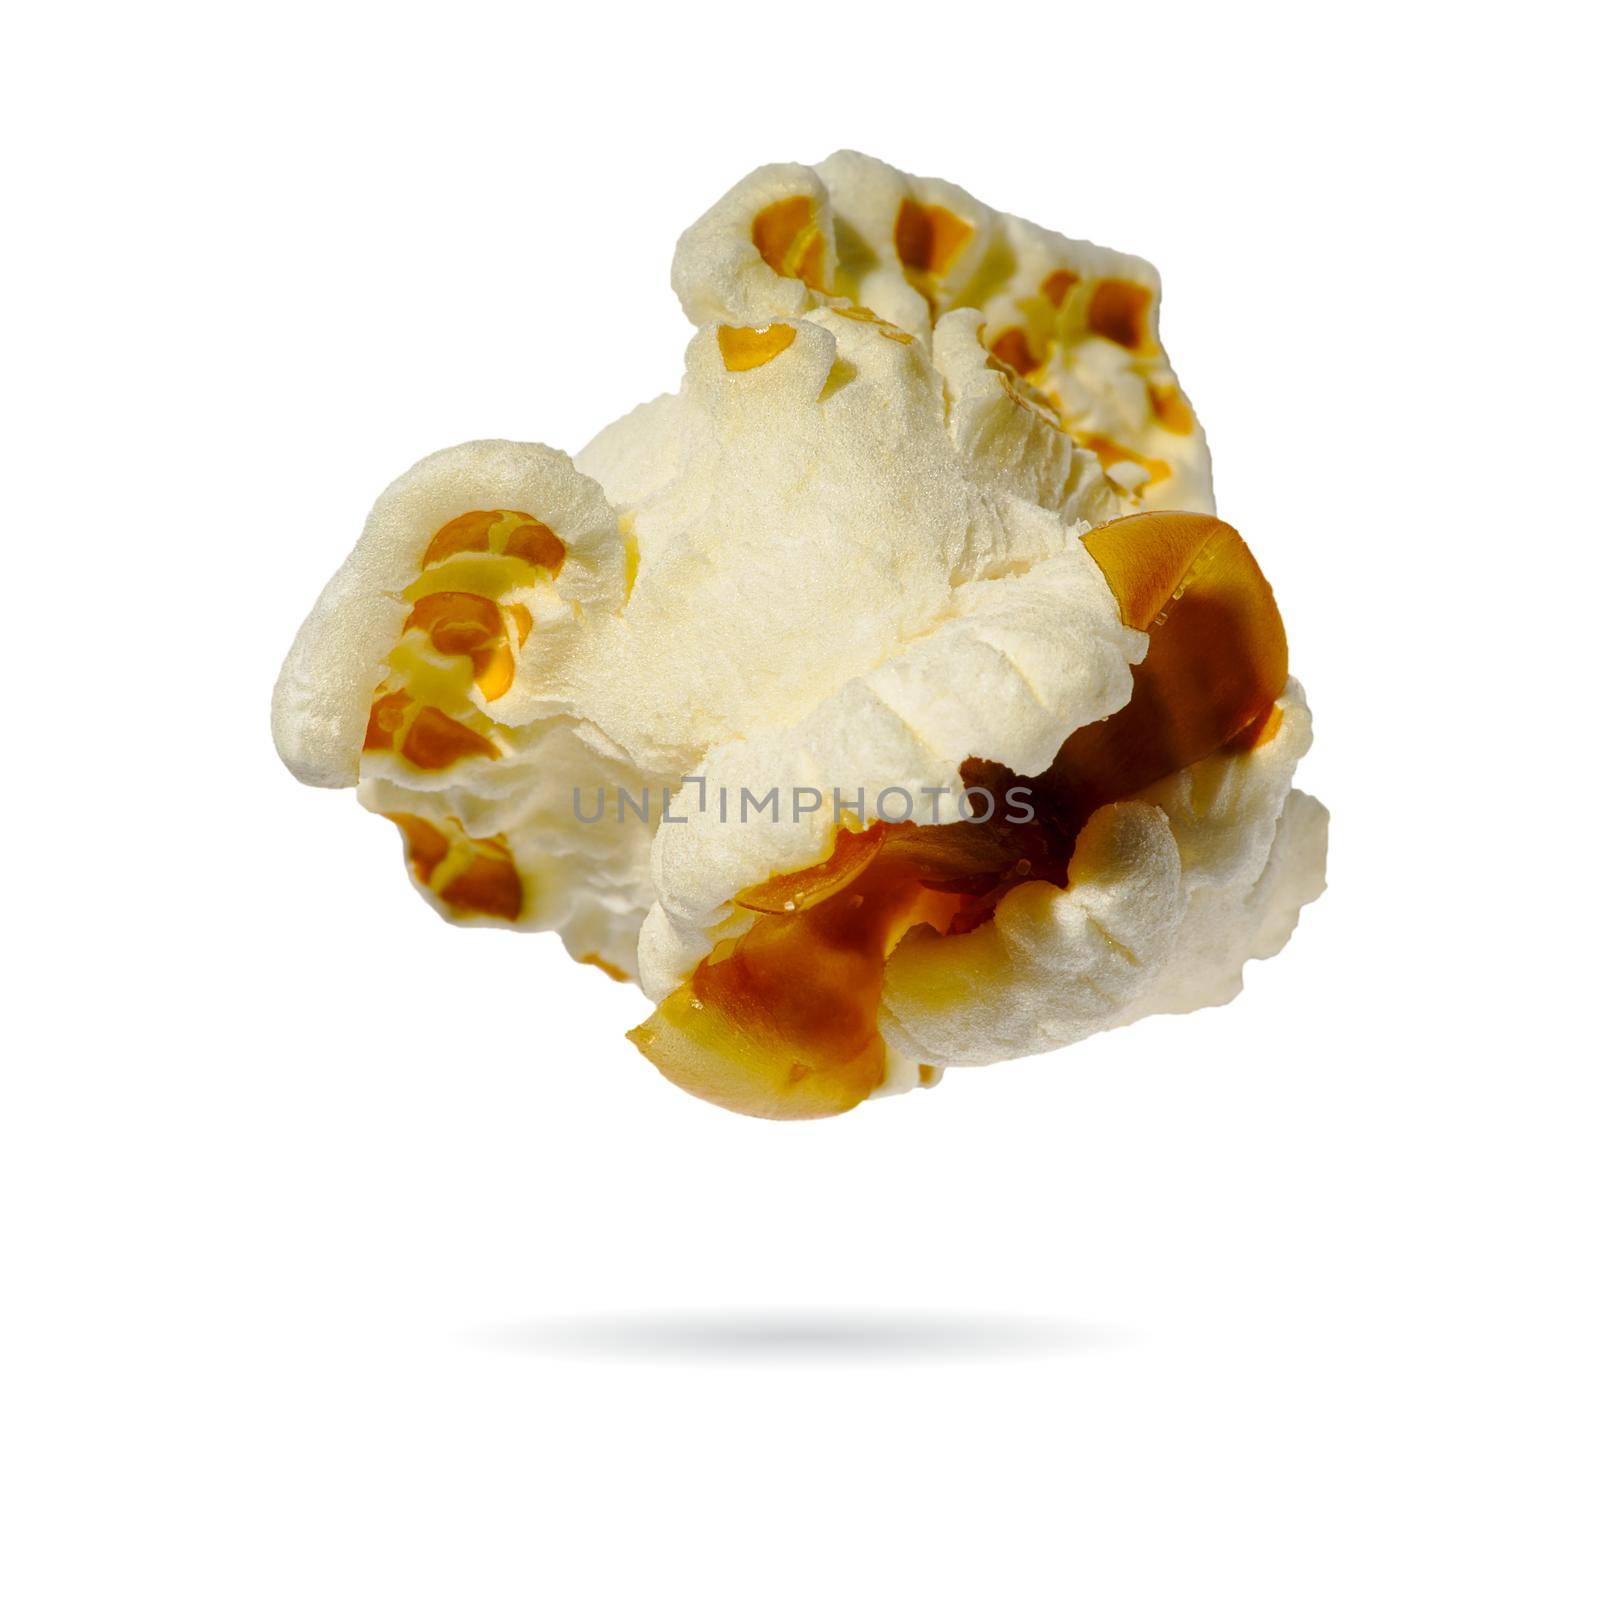 Macro popcorn isolated on white background. single popcorn